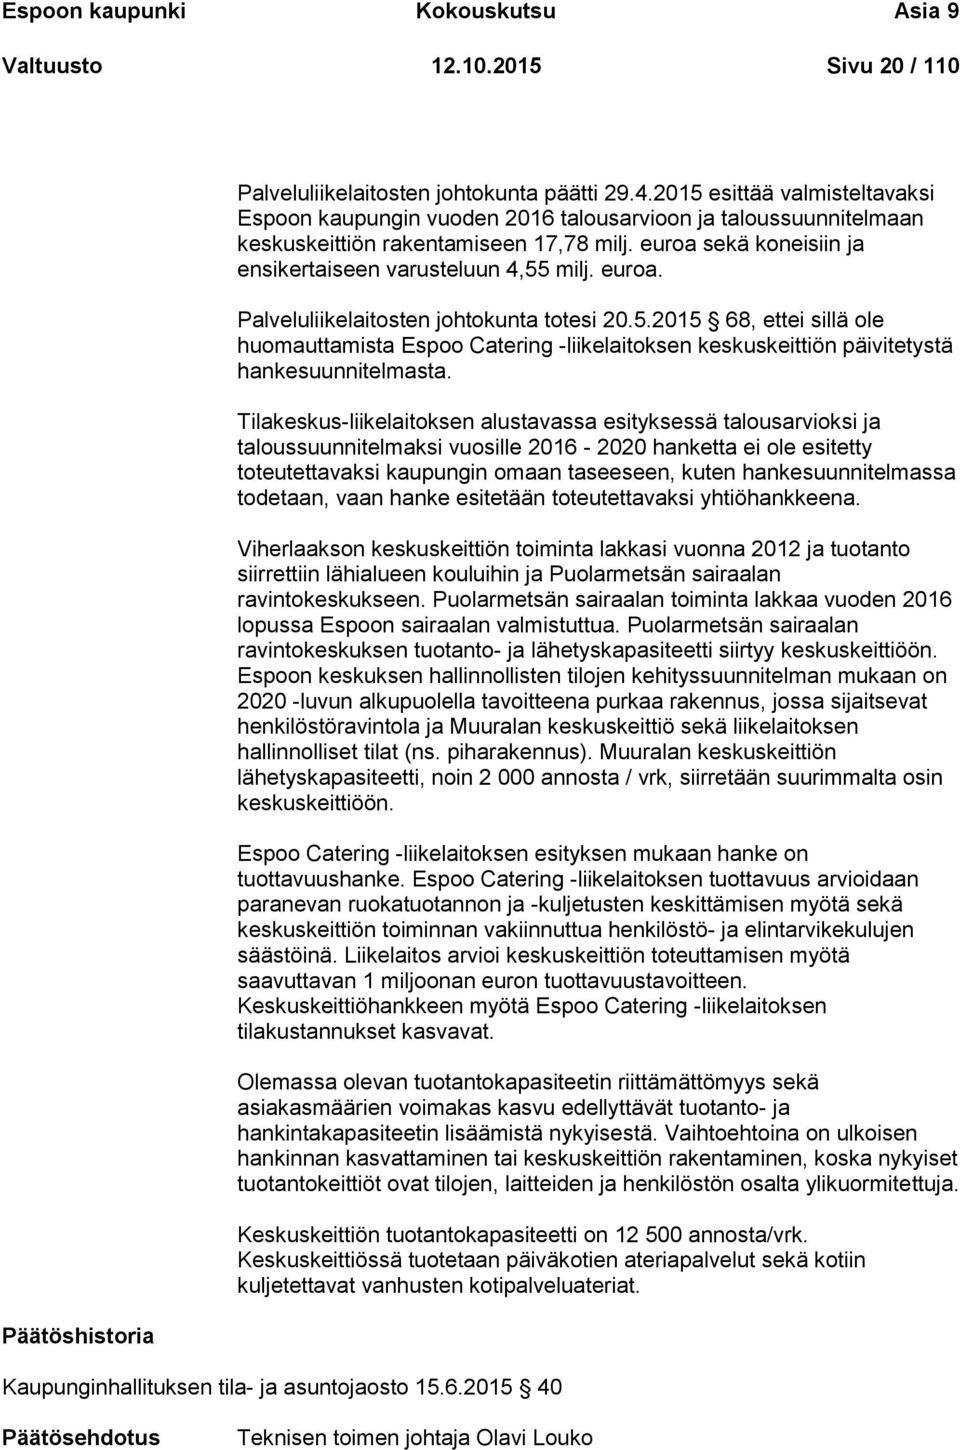 euroa. Palveluliikelaitosten johtokunta totesi 20.5.2015 68, ettei sillä ole huomauttamista Espoo Catering -liikelaitoksen keskuskeittiön päivitetystä hankesuunnitelmasta.